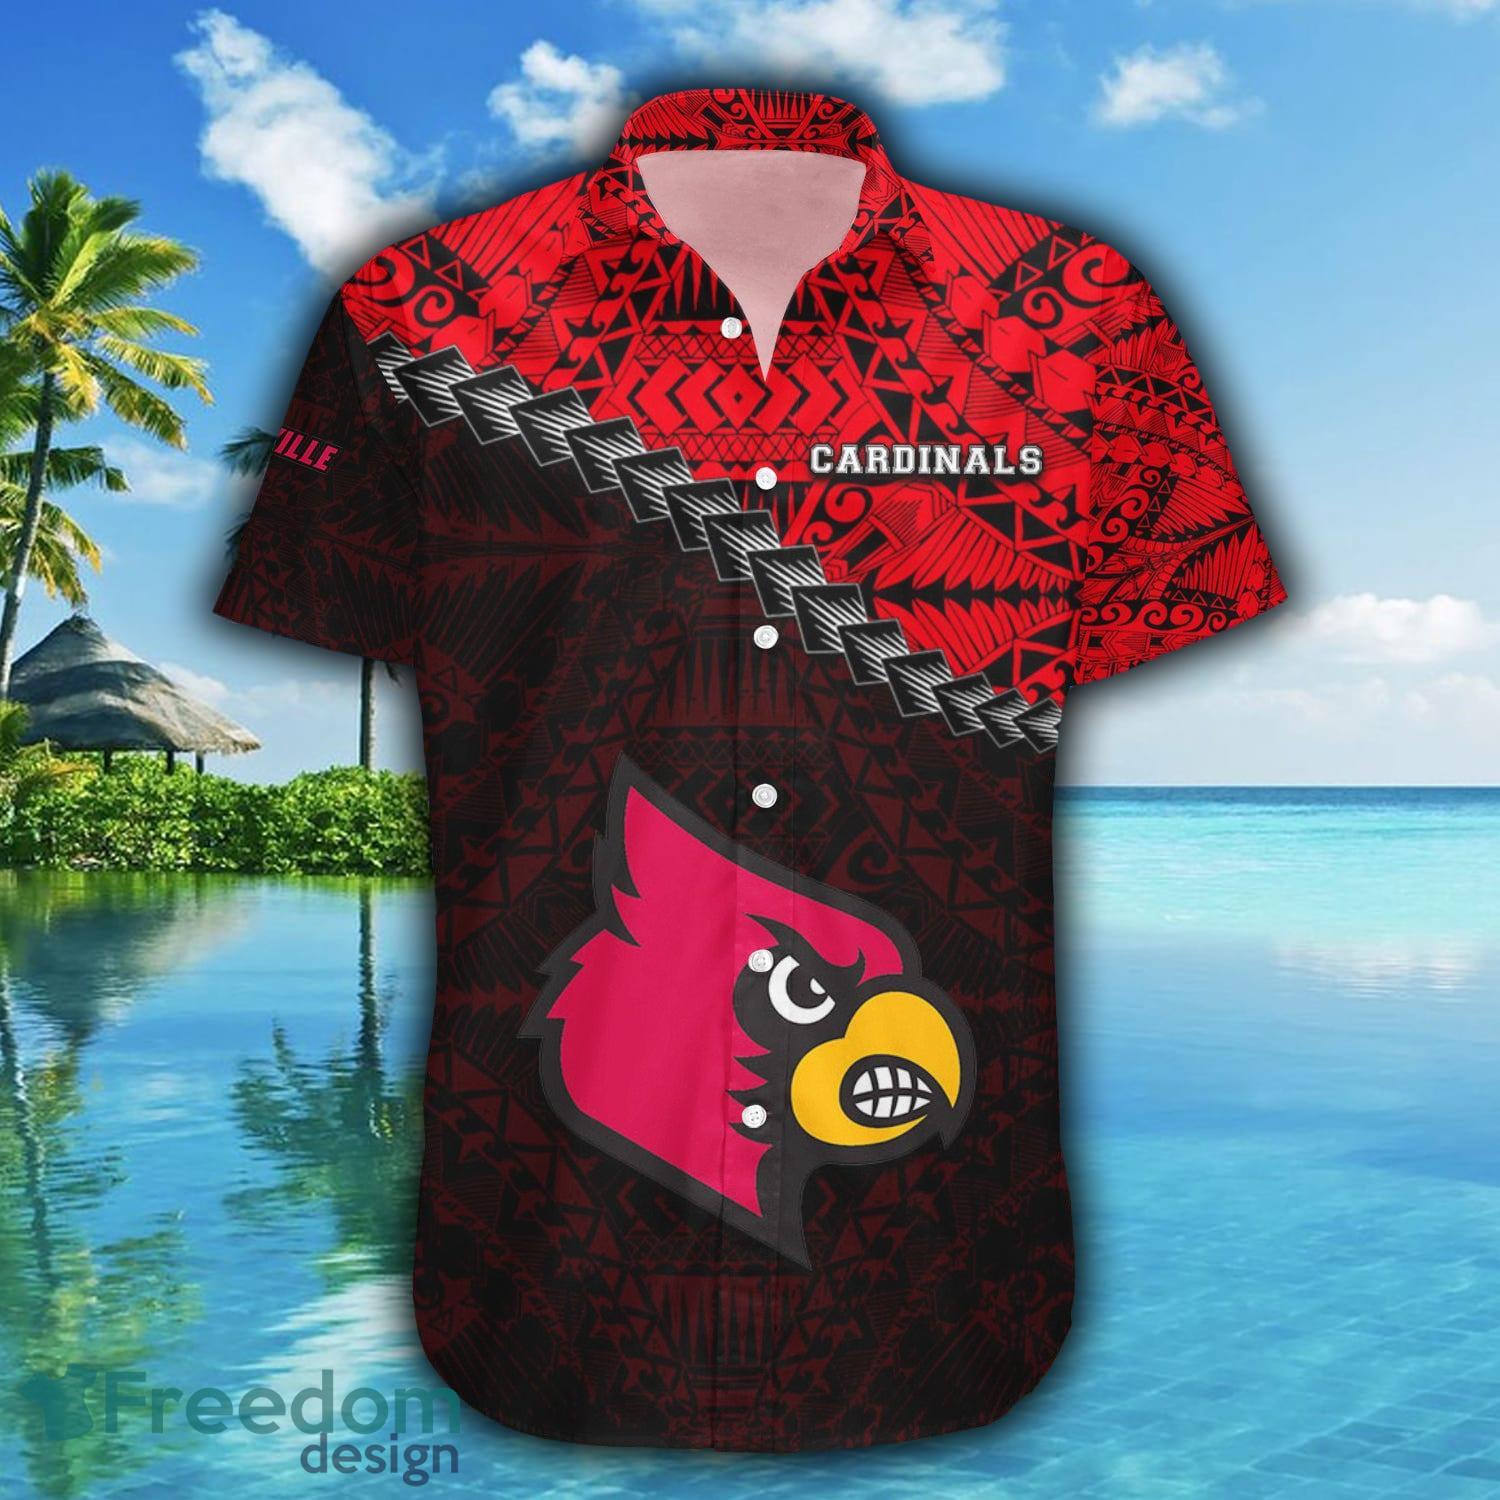 Louisville Cardinals Polo Shirt